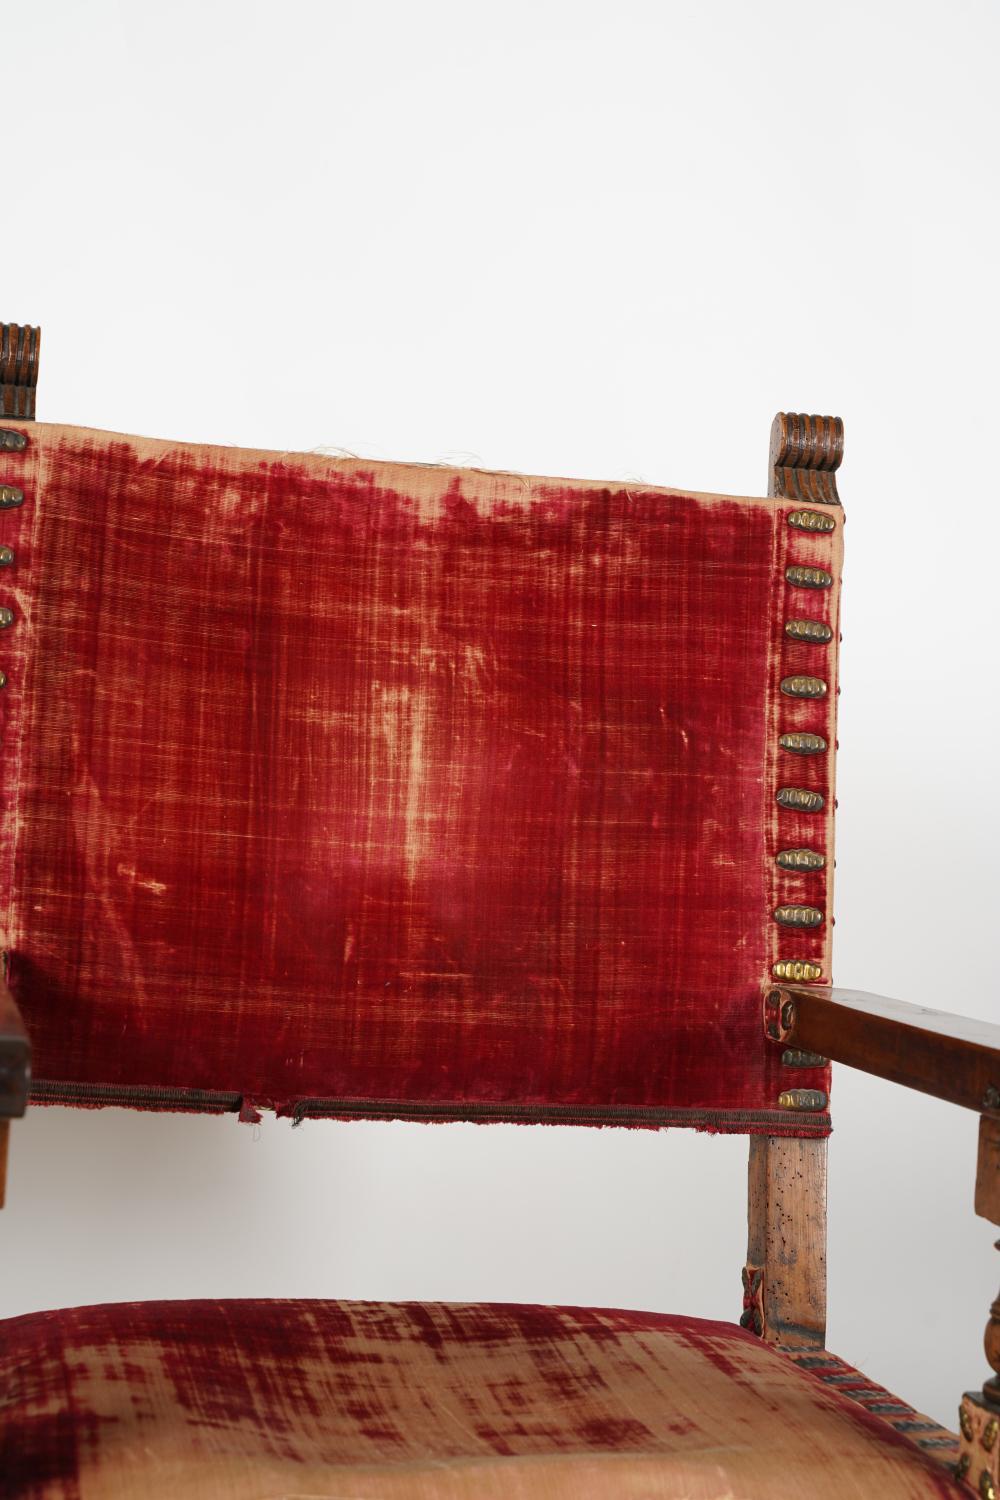 Ancienne paire de chaises à accoudoirs en noyer sculpté de style baroque espagnol de la fin du XVIIIe siècle, avec clous décoratifs en laiton sur velours rouge usé. Magnifique bois de noyer patiné et vieilli. Barres d'appui sculptées et percées de